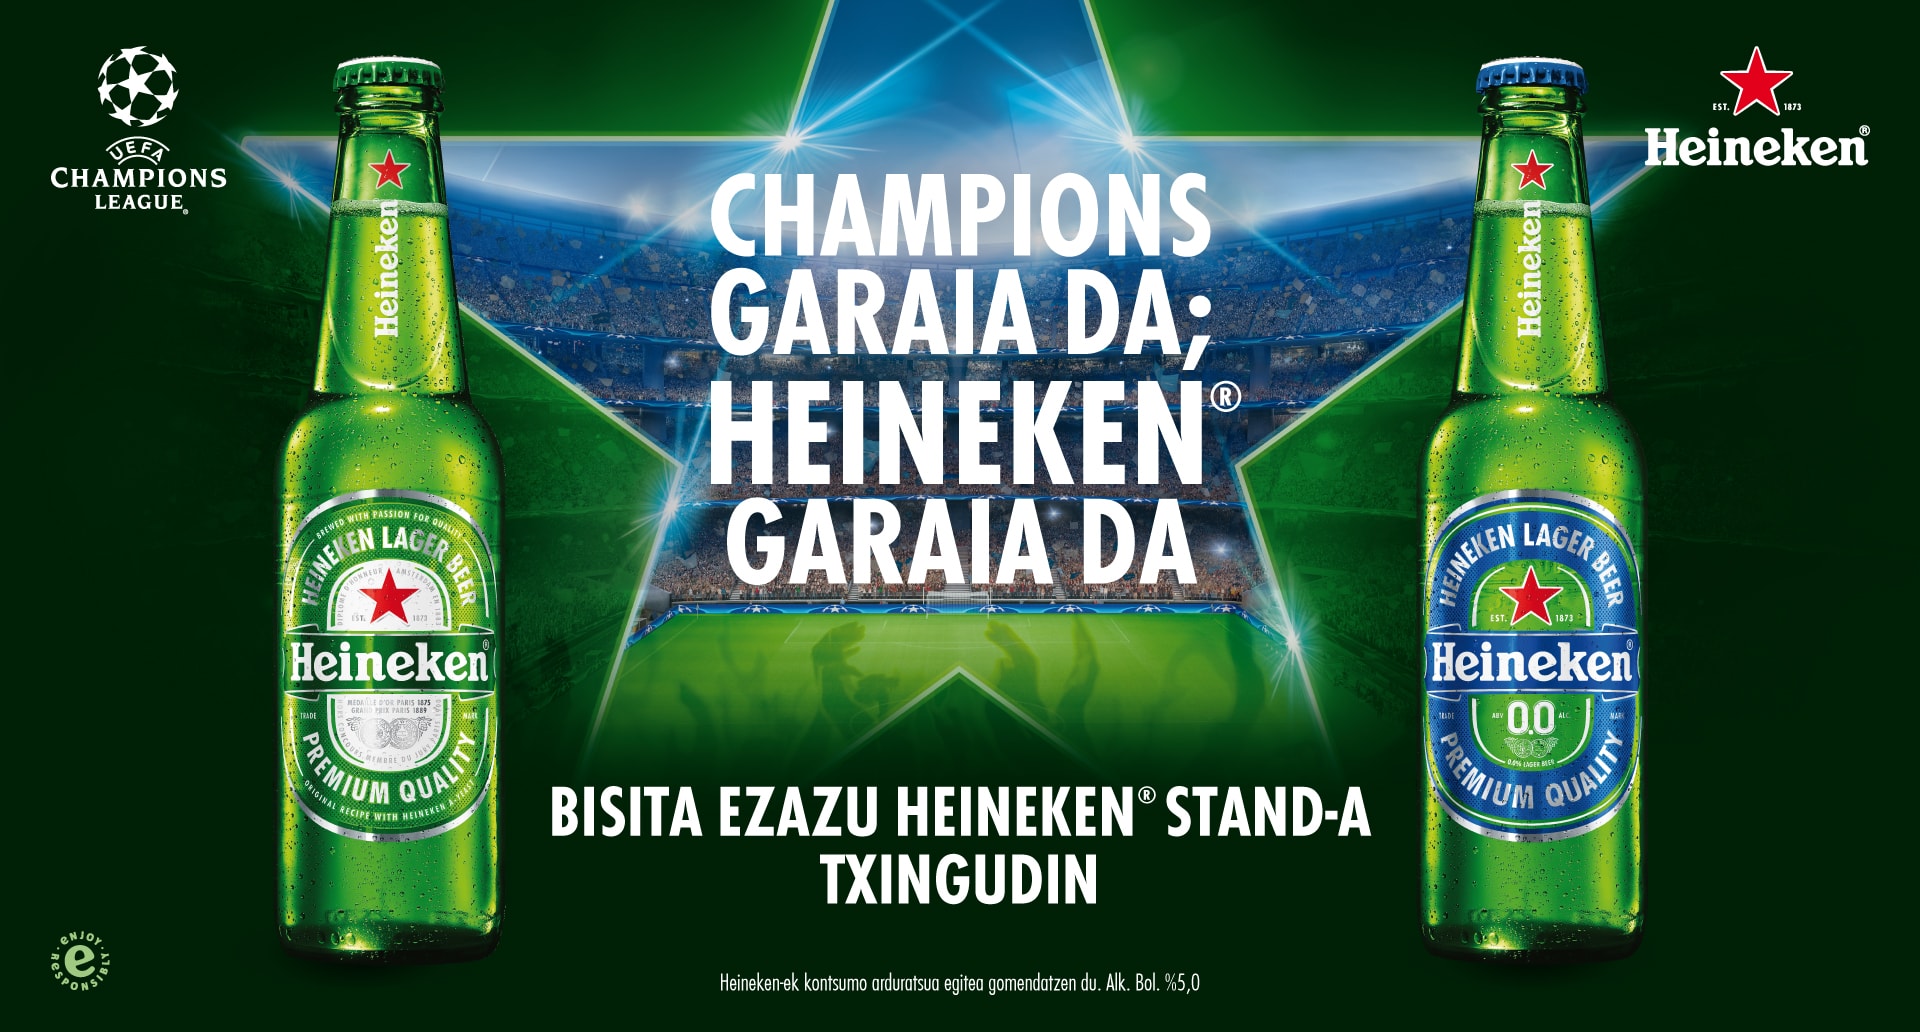 Champions garaia da; Heineken garaia da